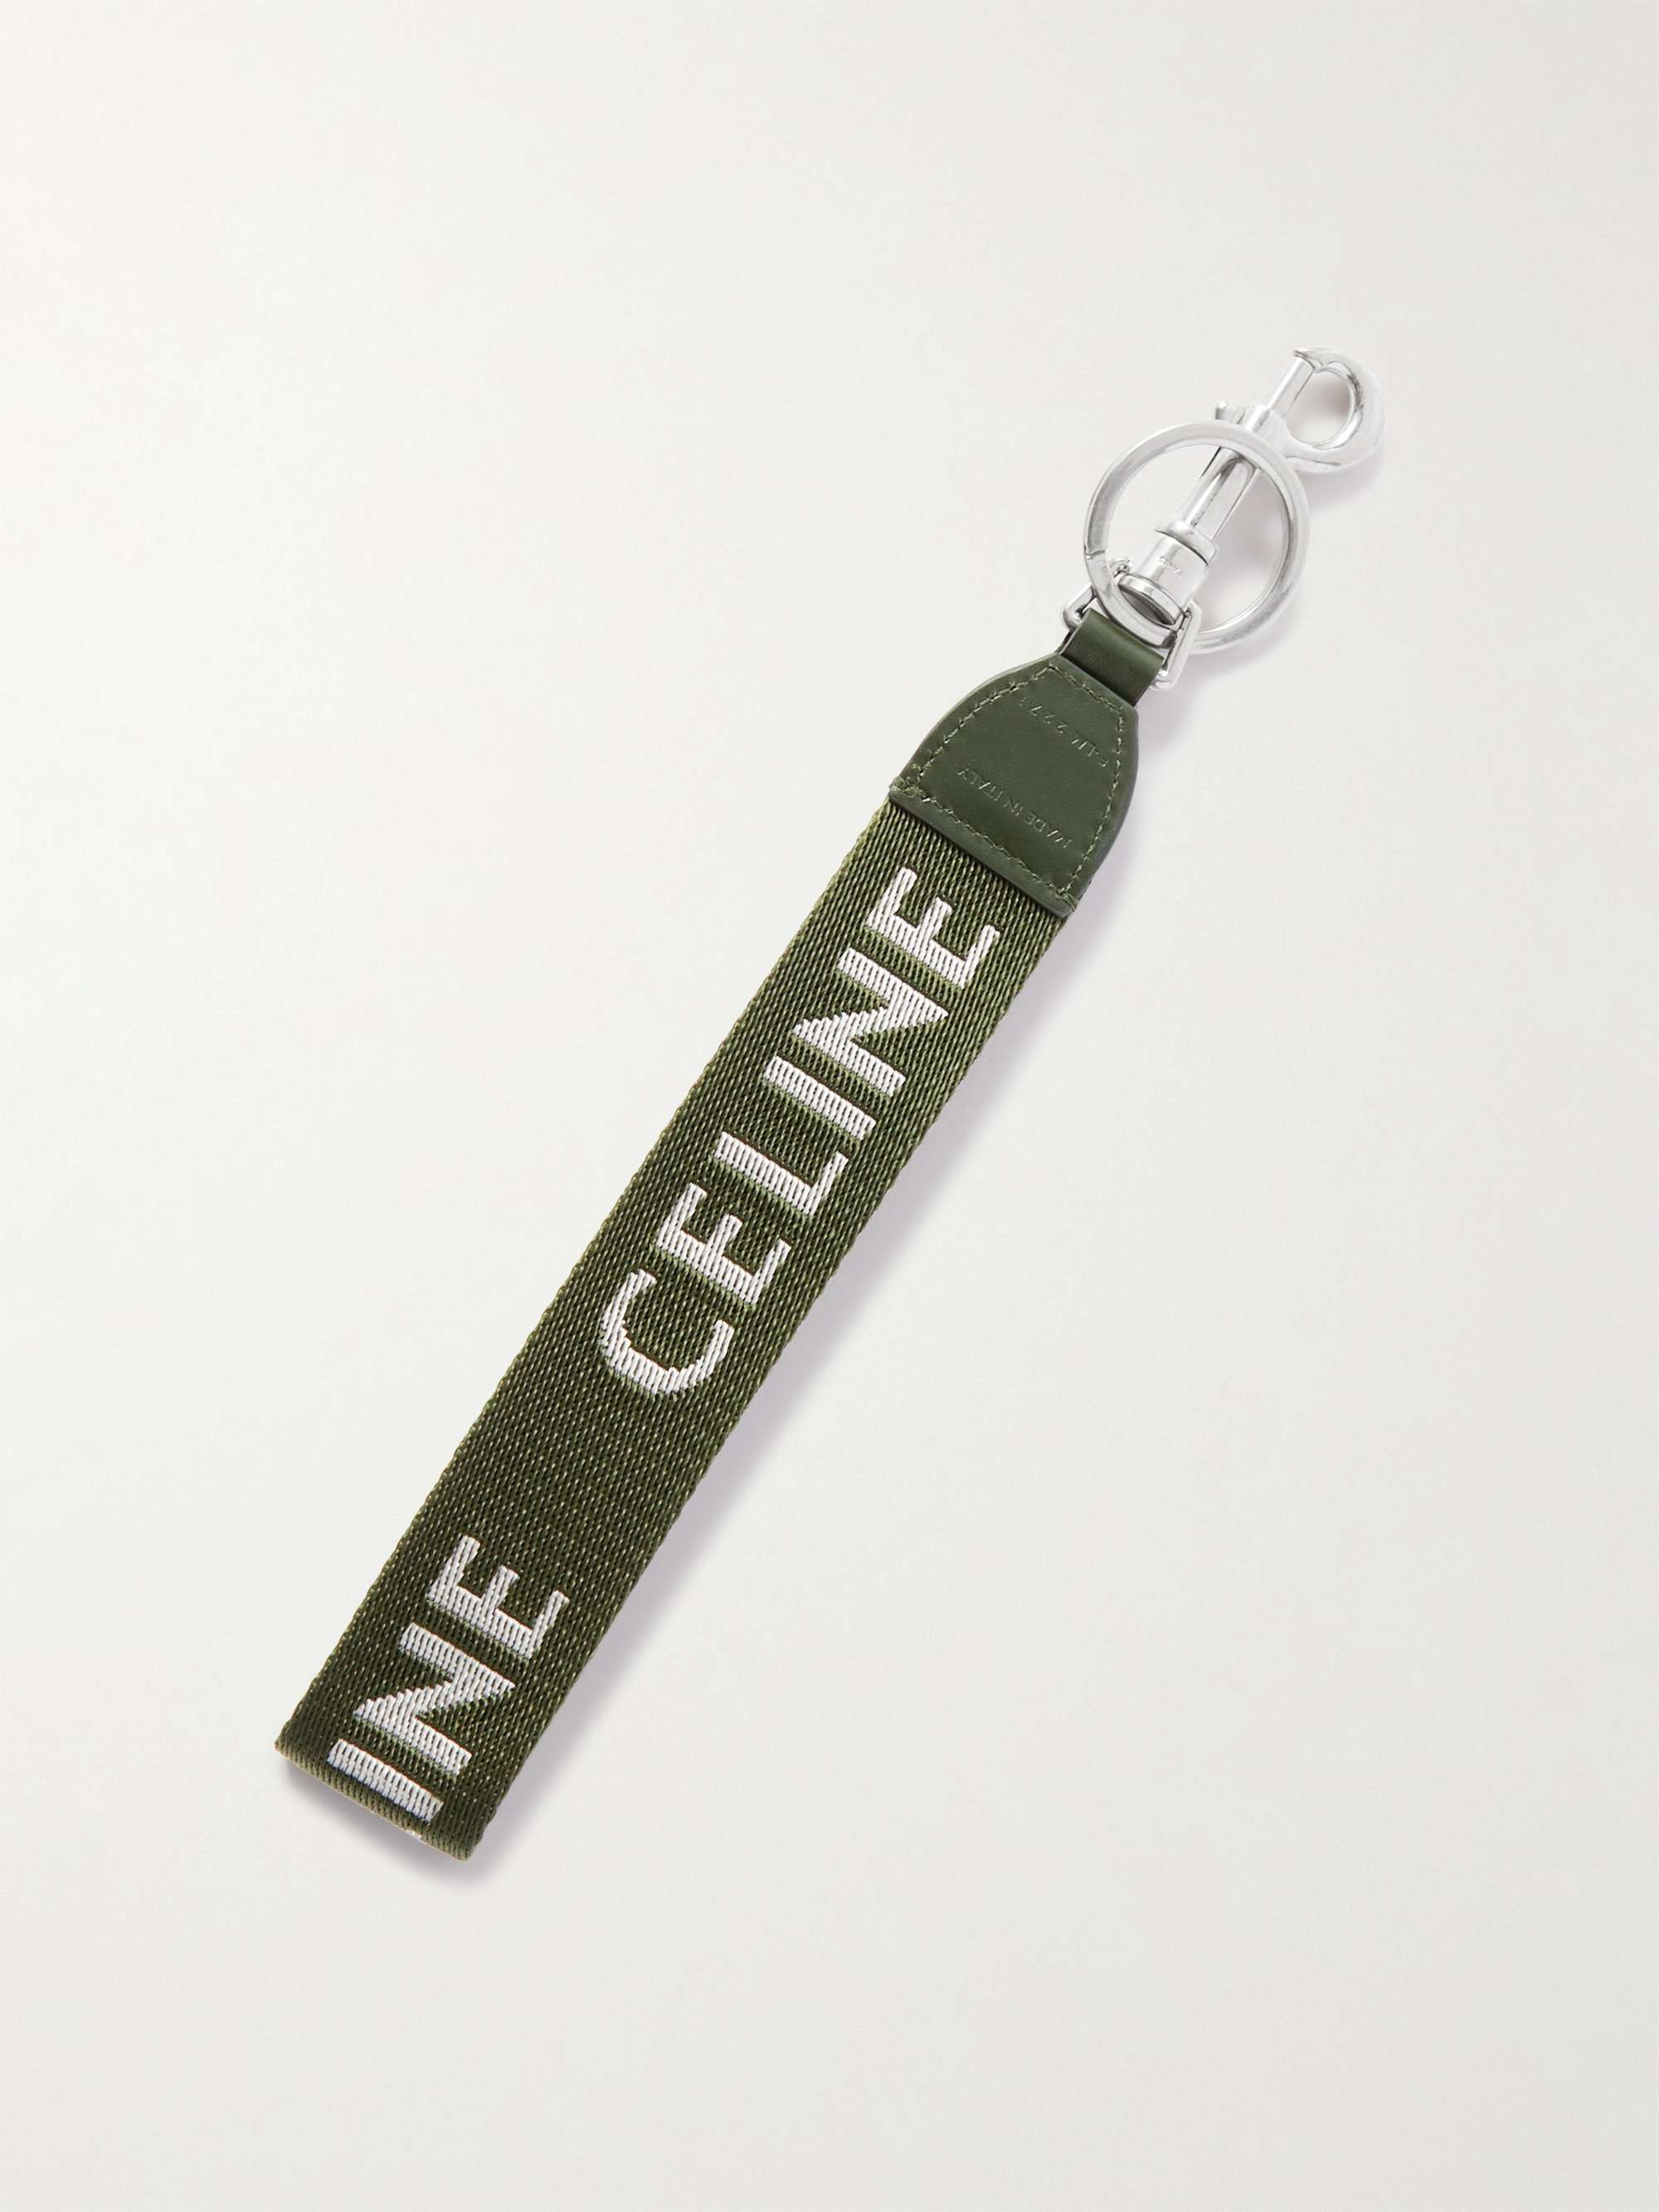 CELINE HOMME Leather-Trimmed Logo-Print Nylon Key Ring for Men | MR PORTER